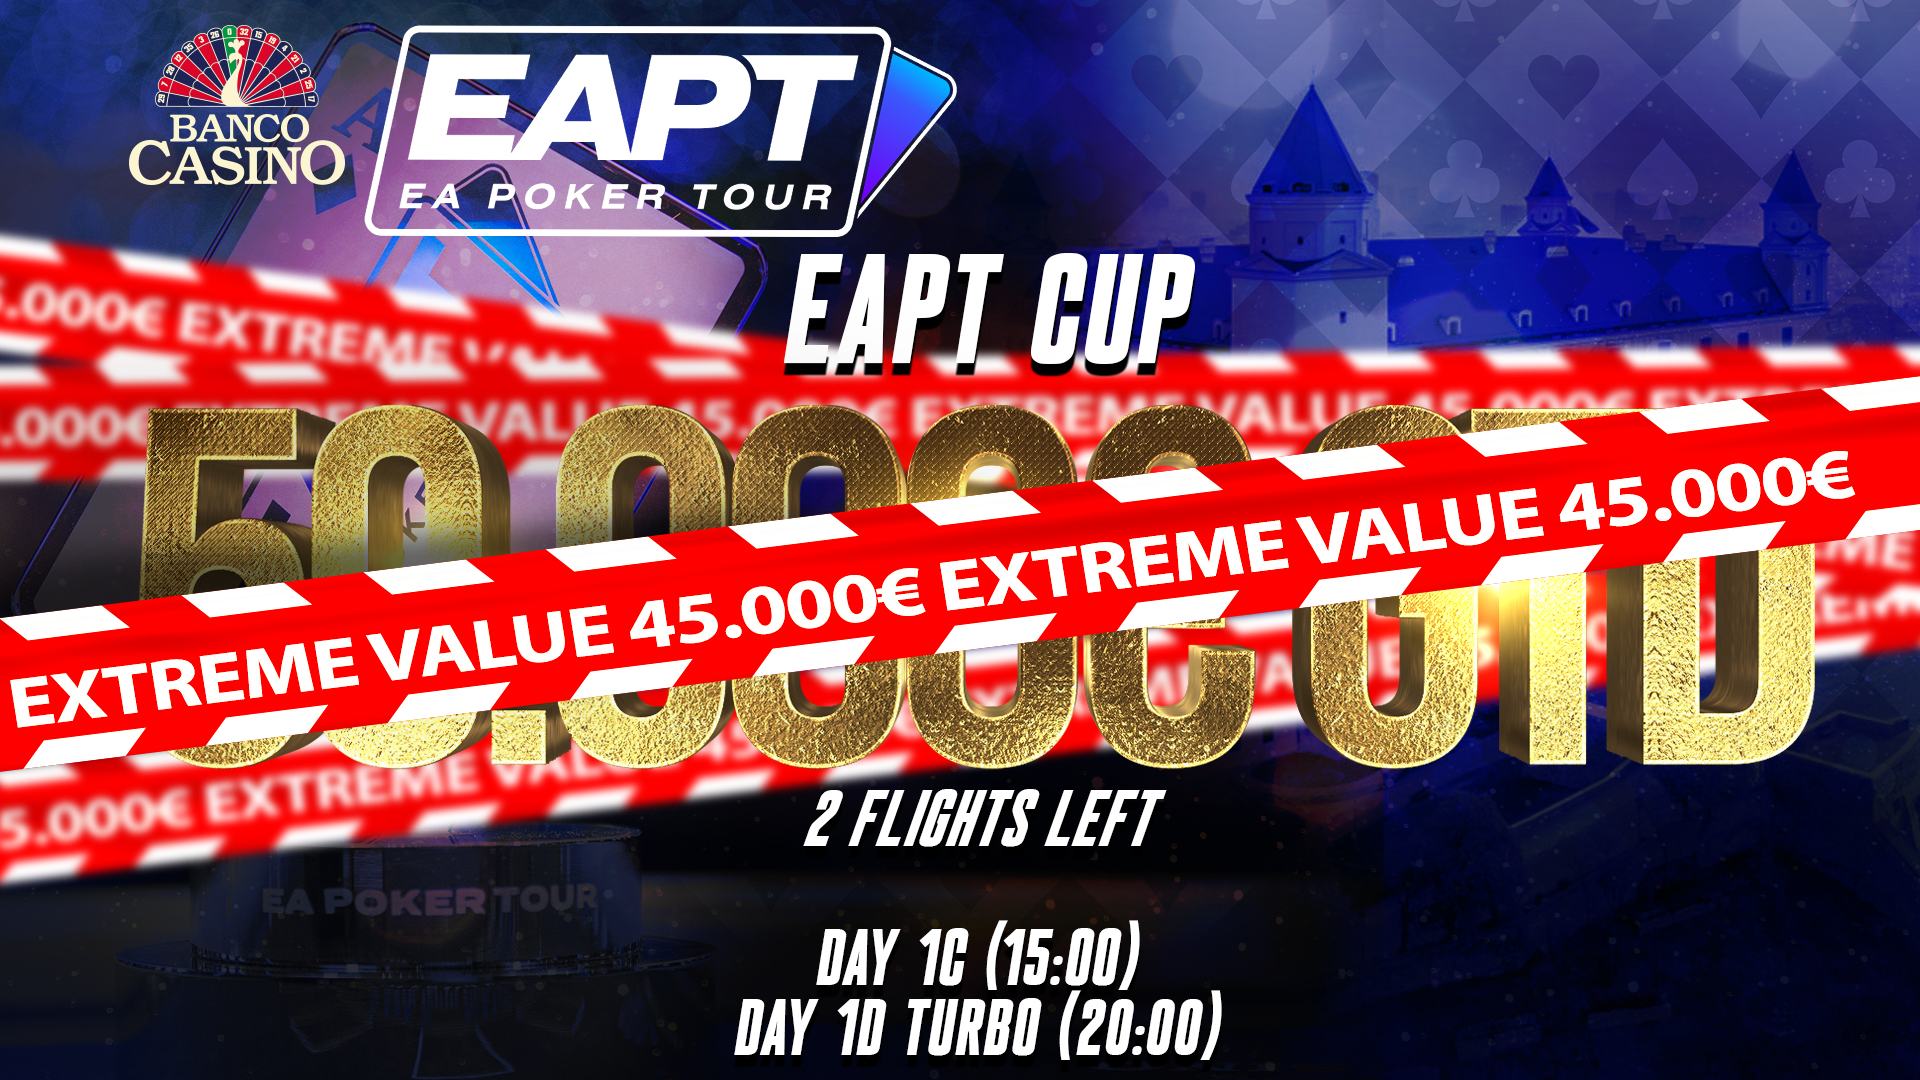 Posledné 2 flighty v EAPT Cupe a extrémny OVERLAY 45.000€!